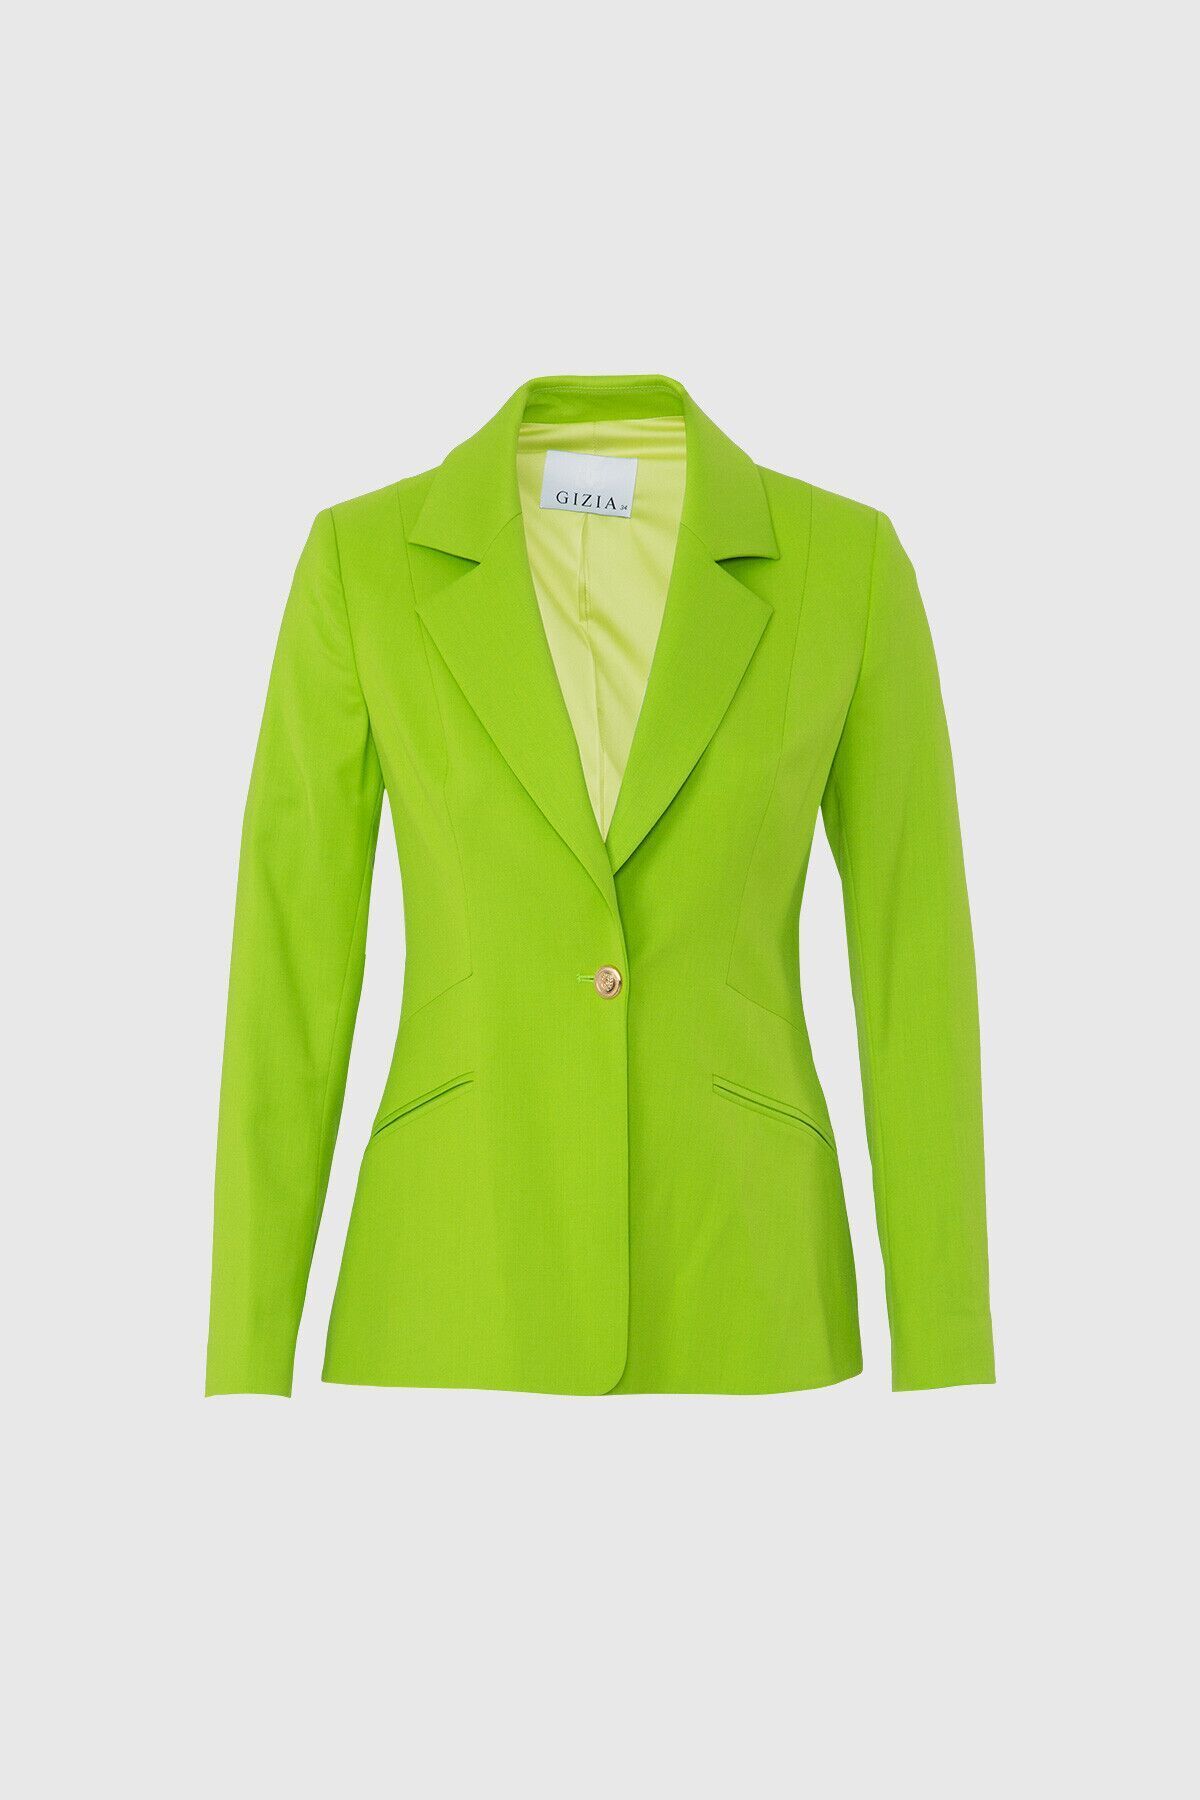 GIZIA Fit Kesim Blazer Tek Düğmeli Yeşil Ceket